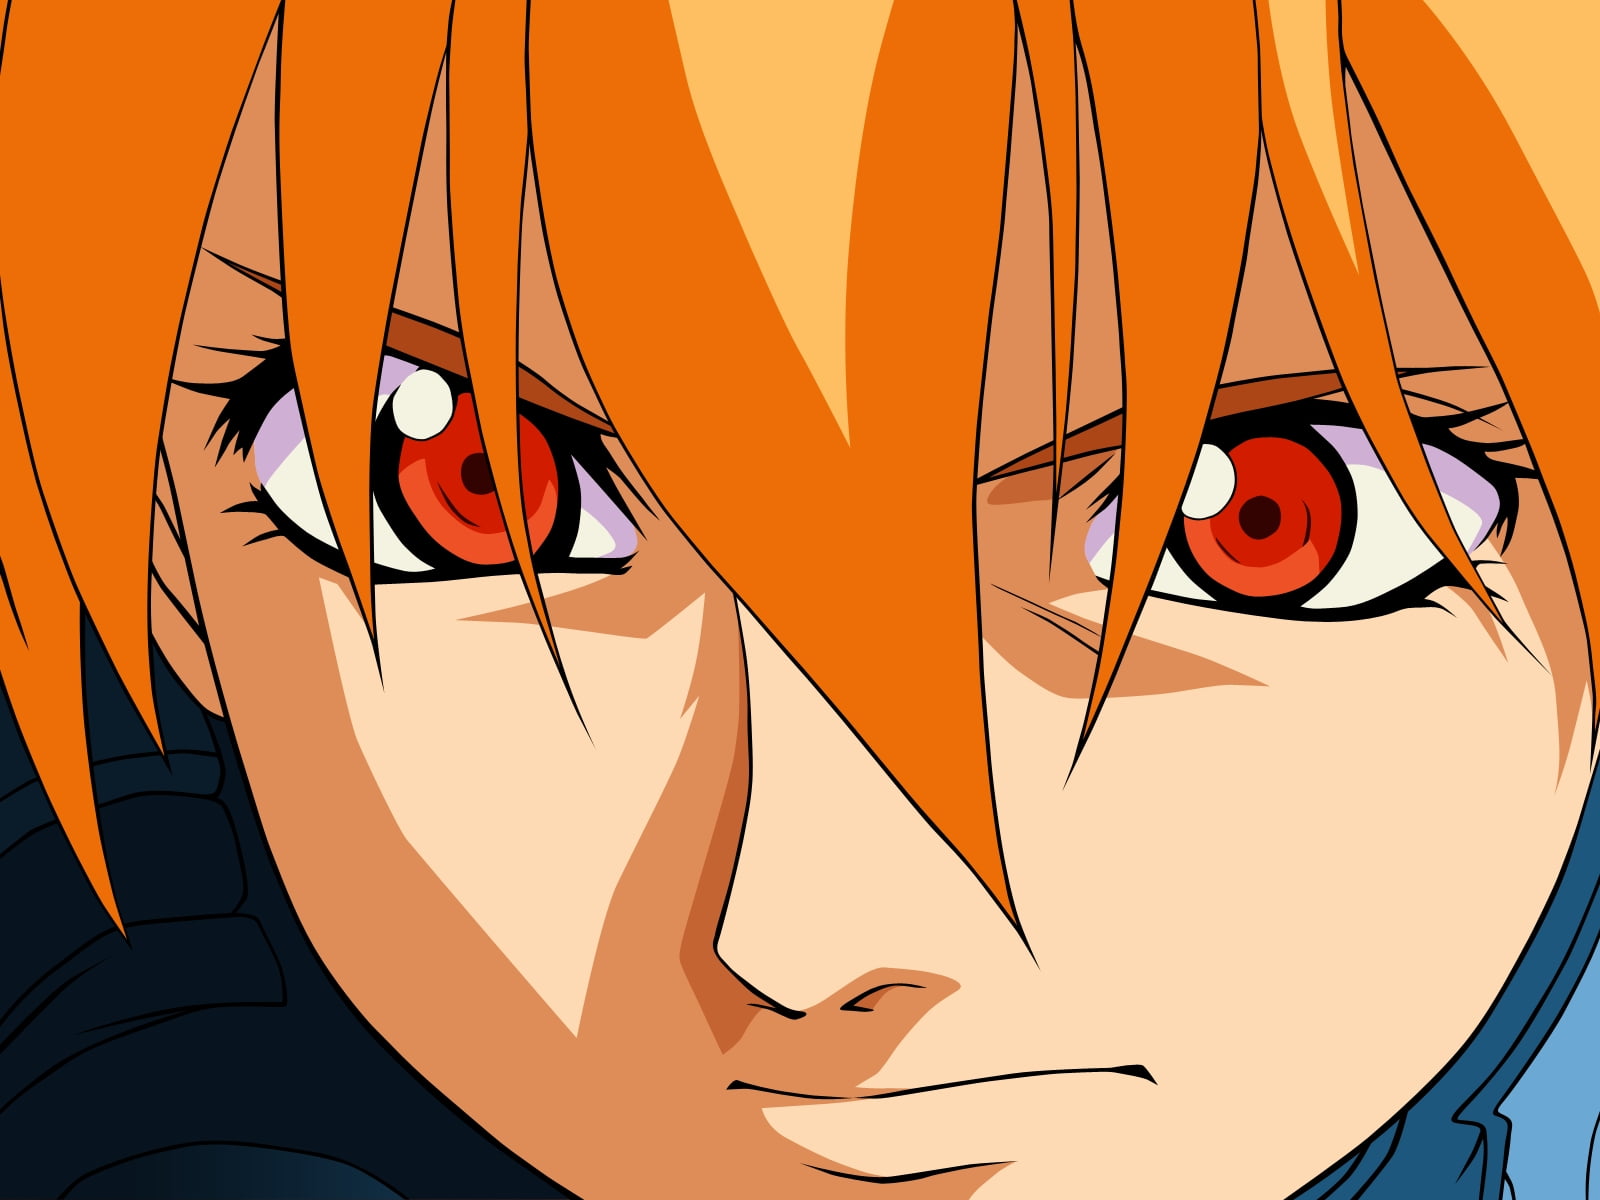 1. "Orange Haired Blue Eyed Anime OC" - wide 5